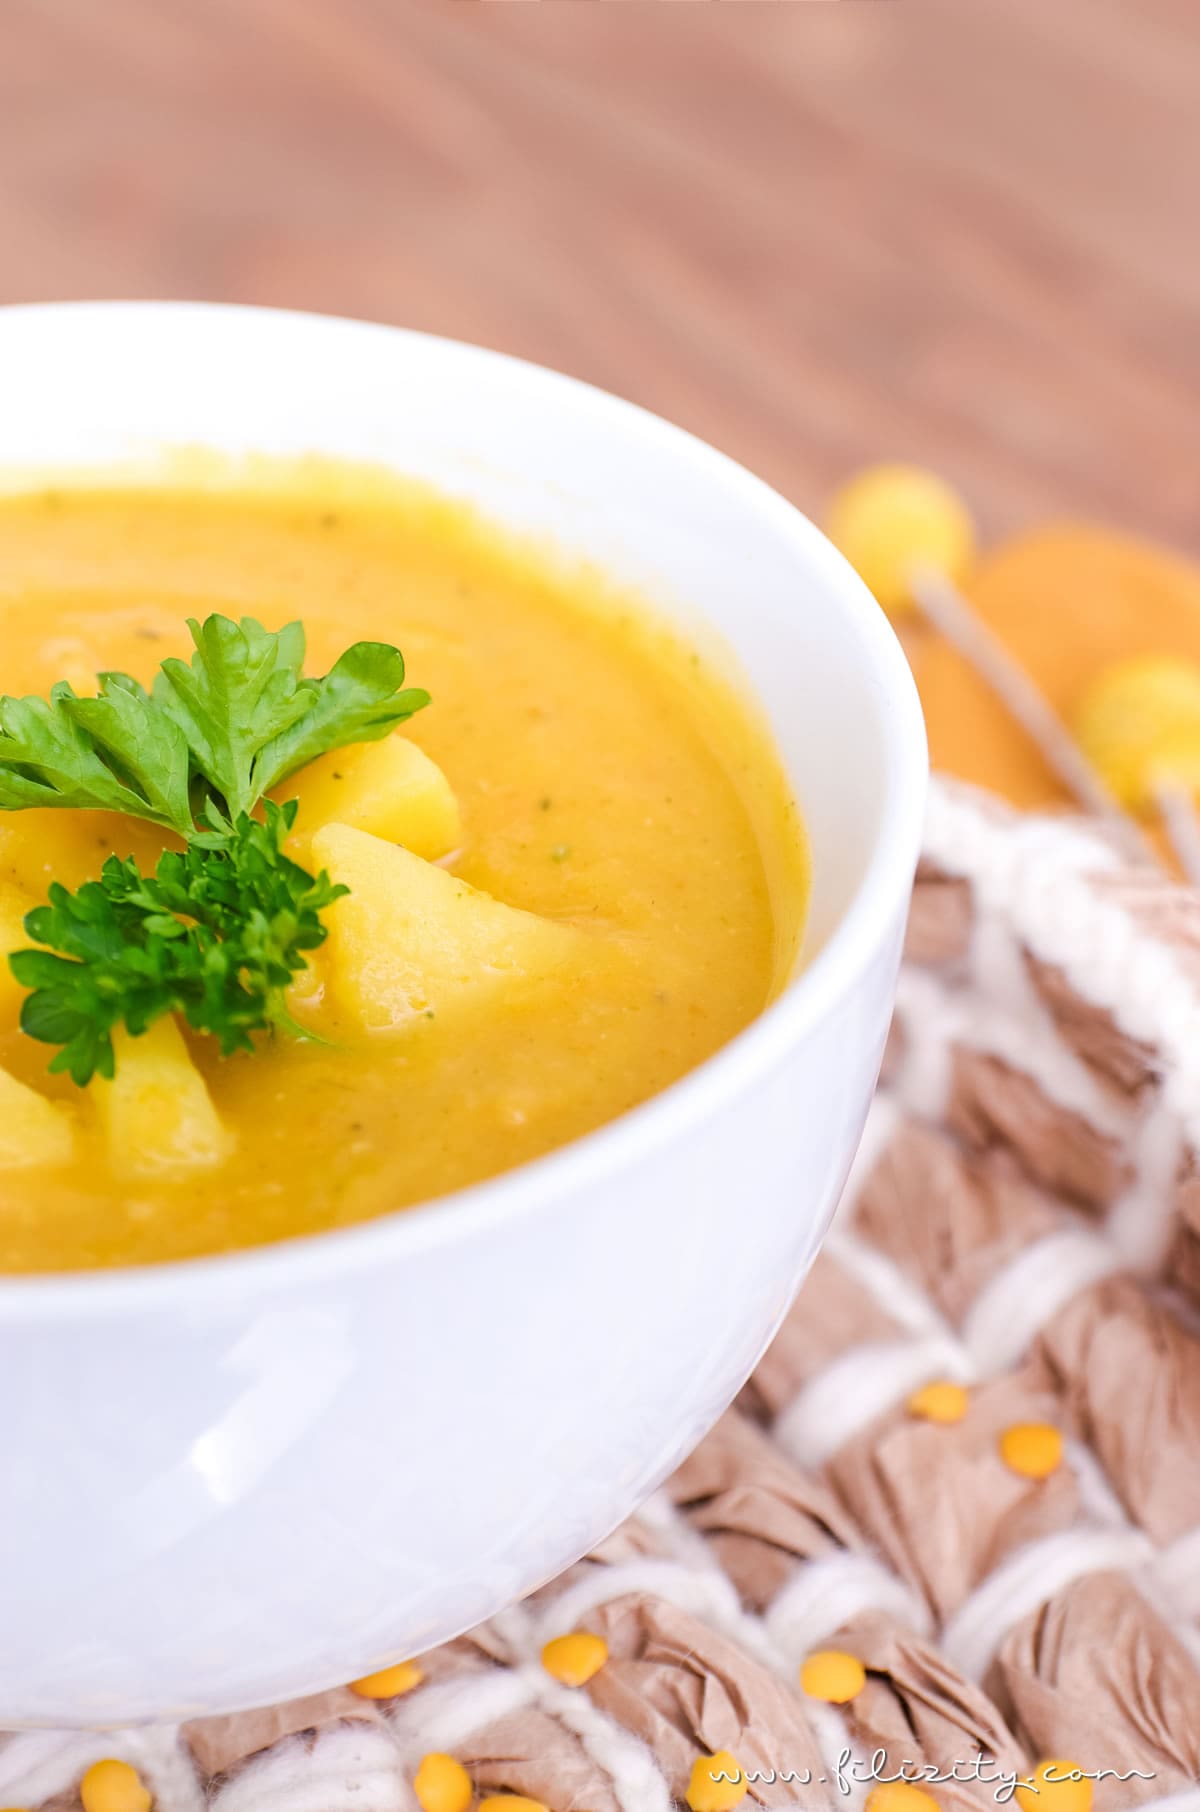 Rezept für schnelle Linsensuppe mit Kartoffeln, Karotten & Kurkuma - Echtes Herbst-Soulfood (vegan) | Filizity.com | Food-Blog aus dem Rheinland #herbst #soulfood #suppe #vegan